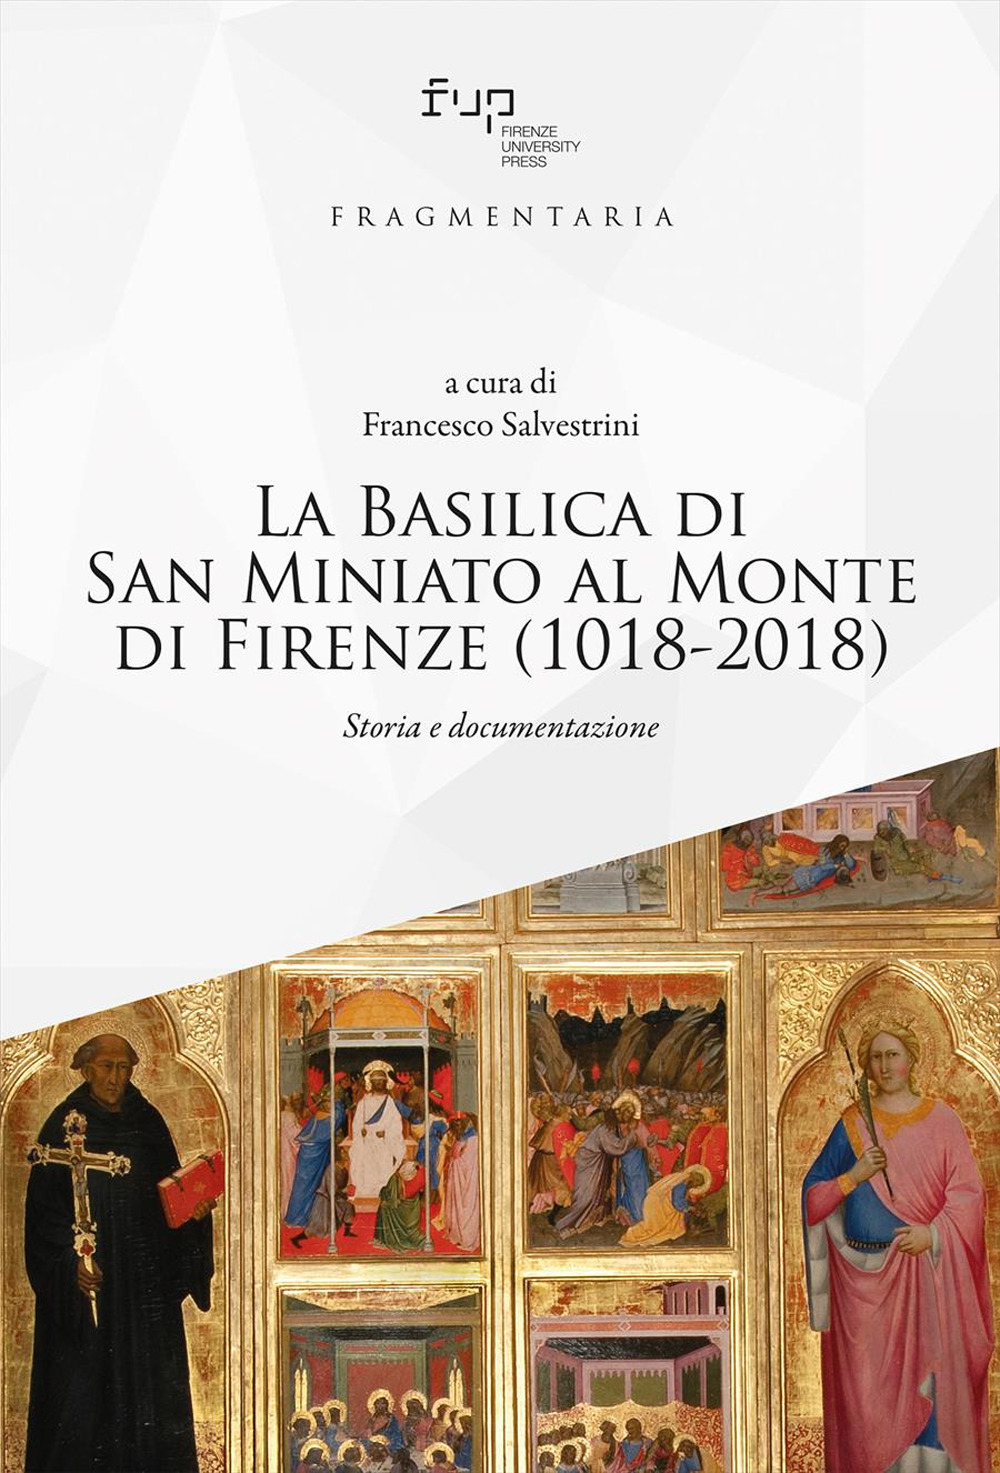 La Basilica di San Miniato al Monte di Firenze (1018-2018). Storia e documentazione